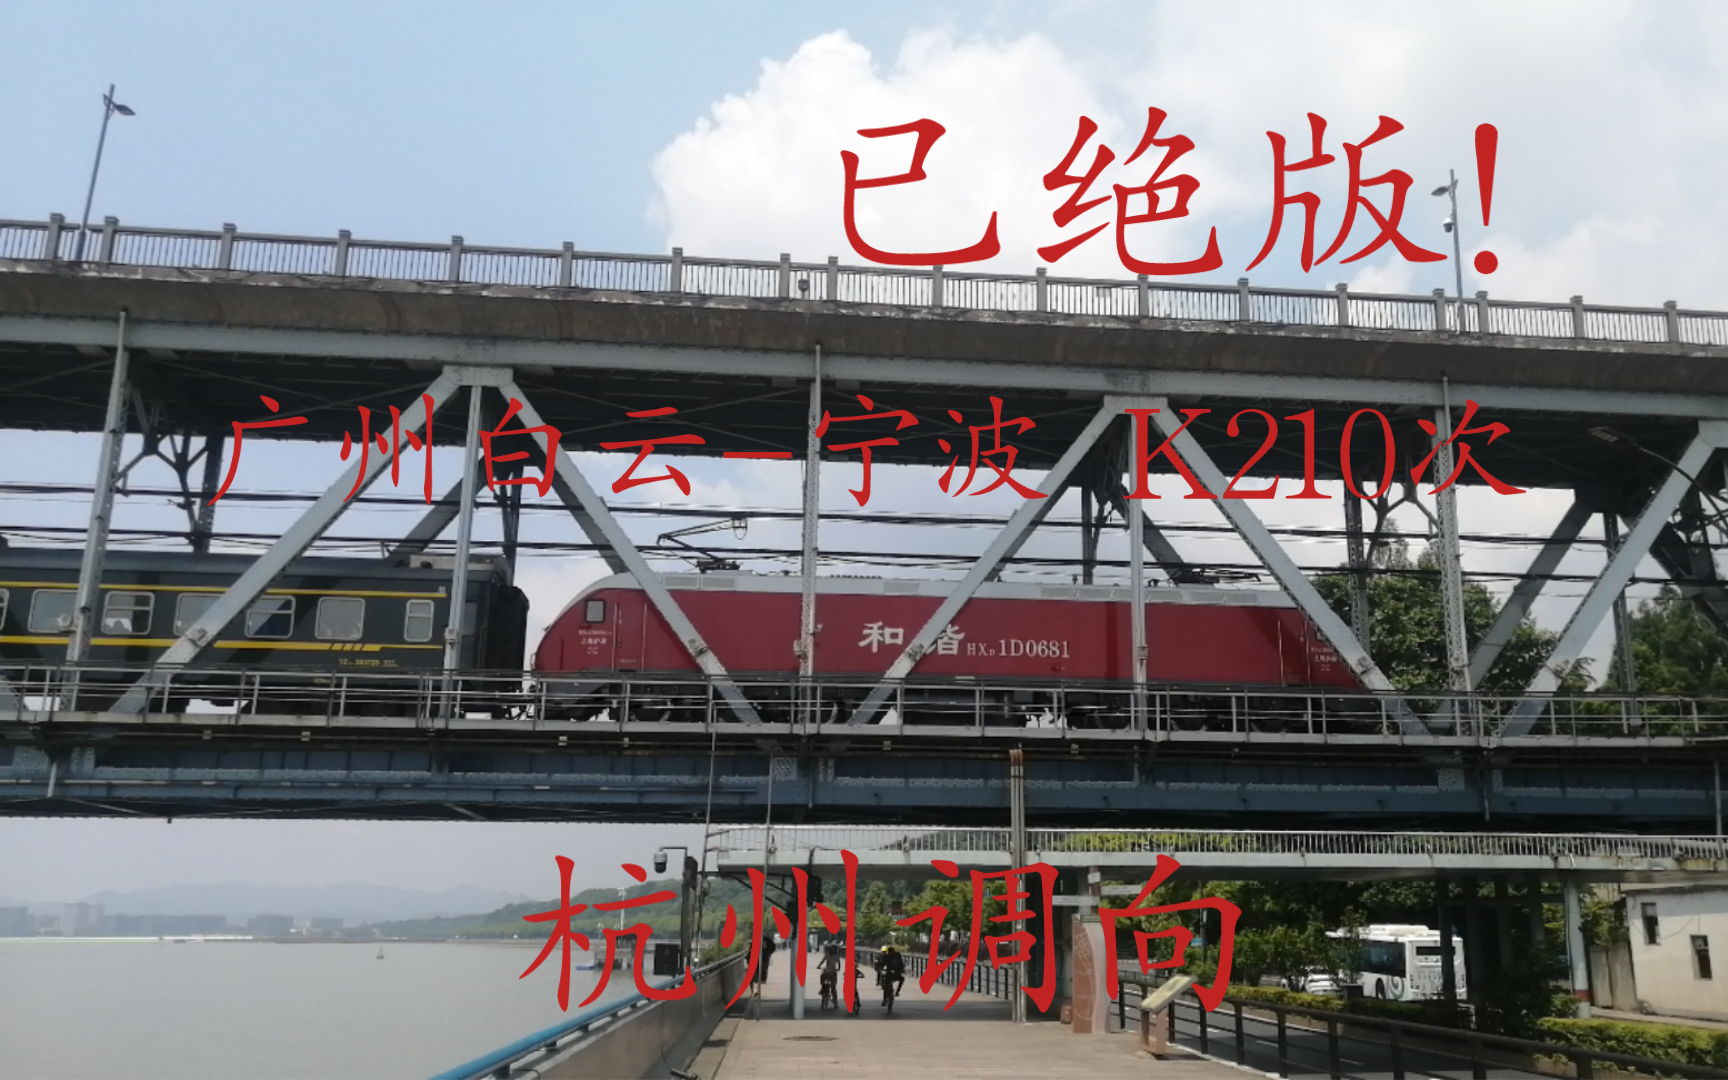 【绝版影像】广州白云-宁波K210次列车通过钱塘江大桥，前往杭州站换向